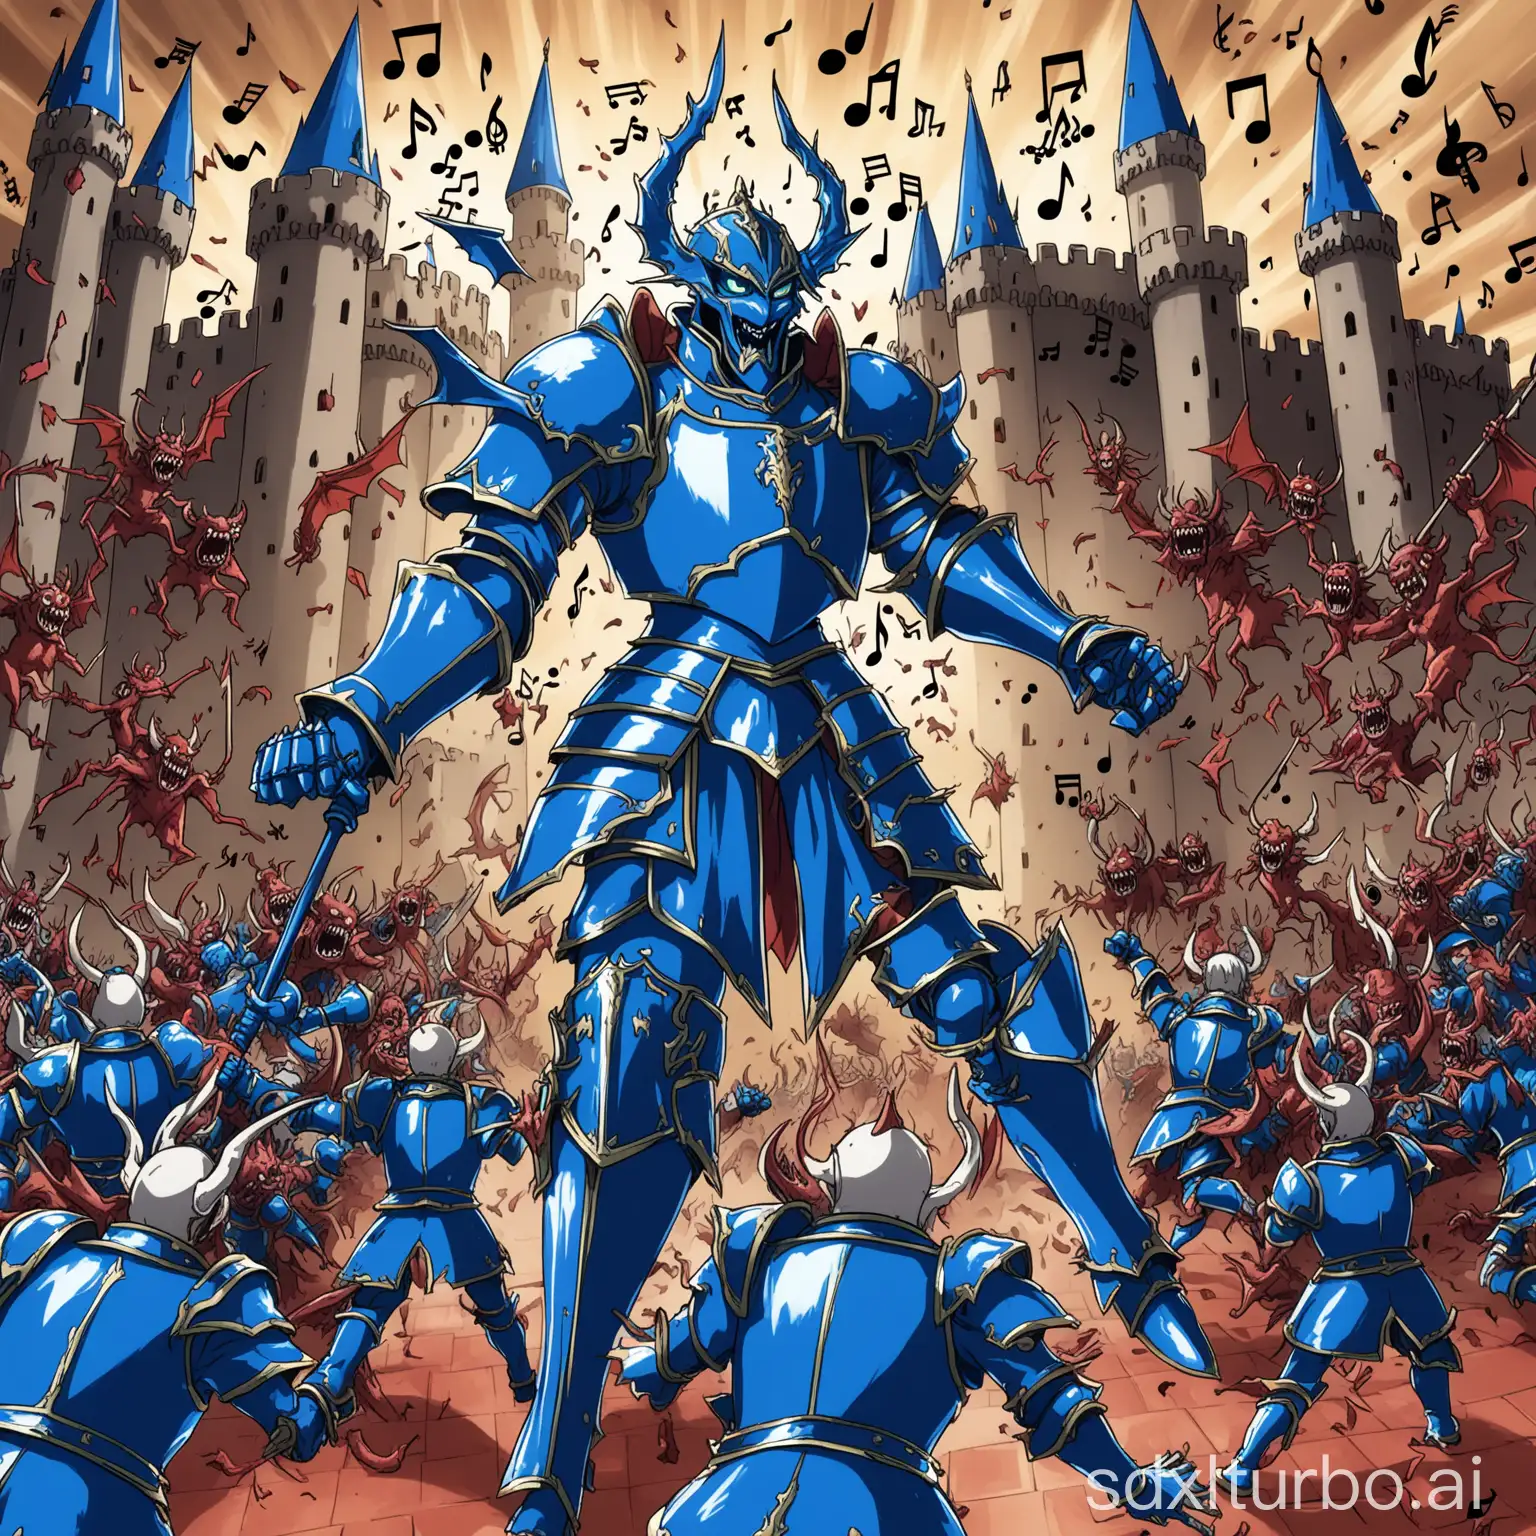 Blue-Armored-Anime-Warrior-Battles-Daemons-in-Musical-Castle